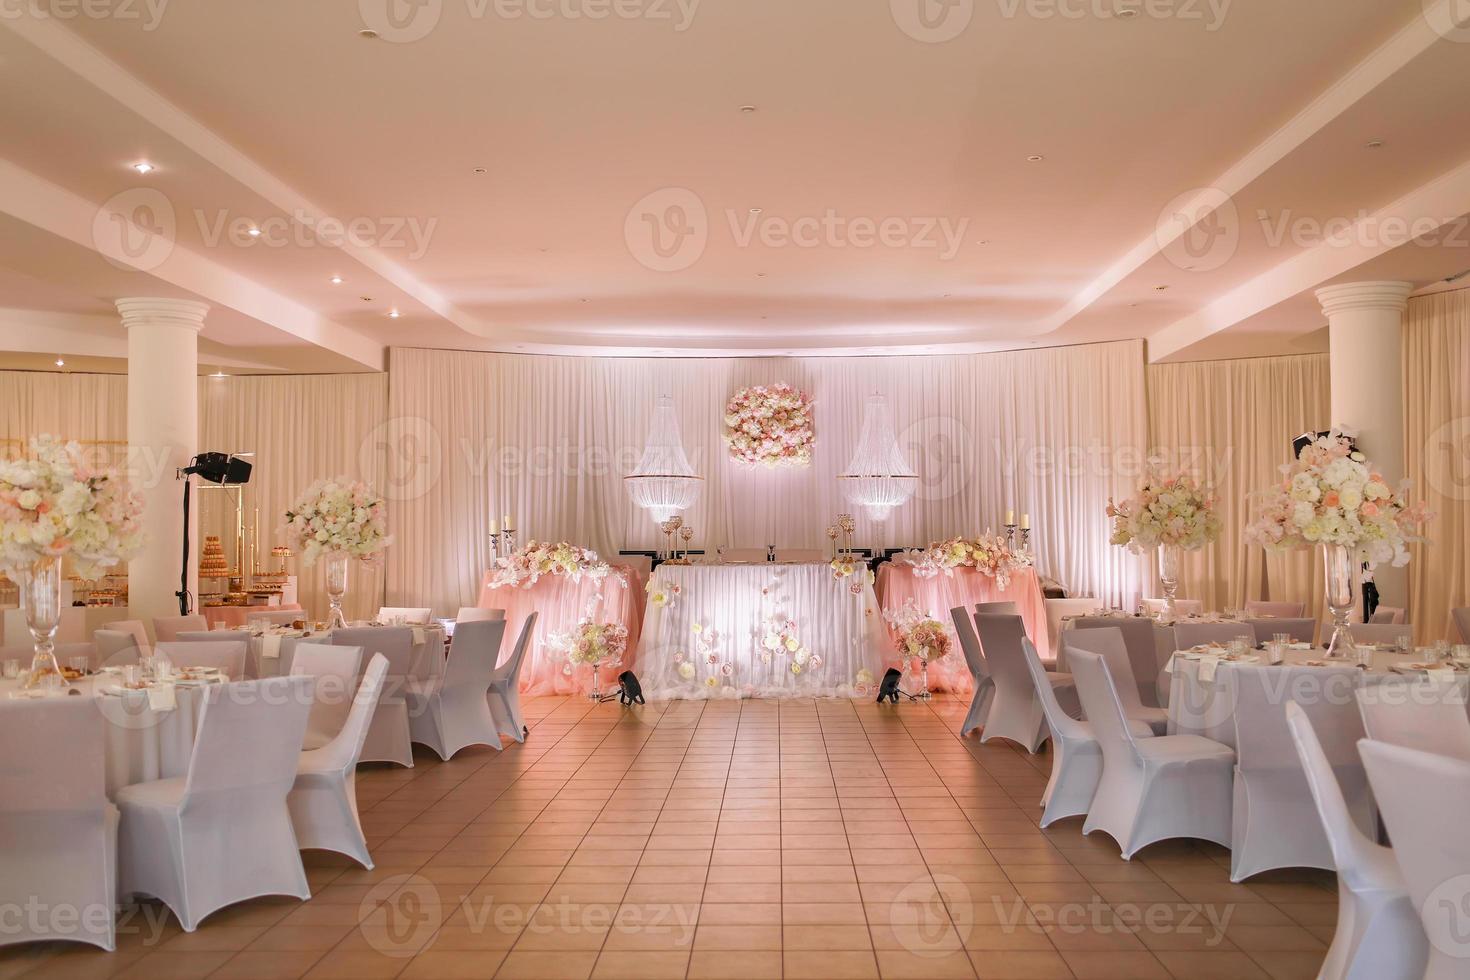 feestelijk bruiloft tafel decoratie met kristal kroonluchters, gouden kandelaars, kaarsen en wit roze bloemen . elegant bruiloft dag foto